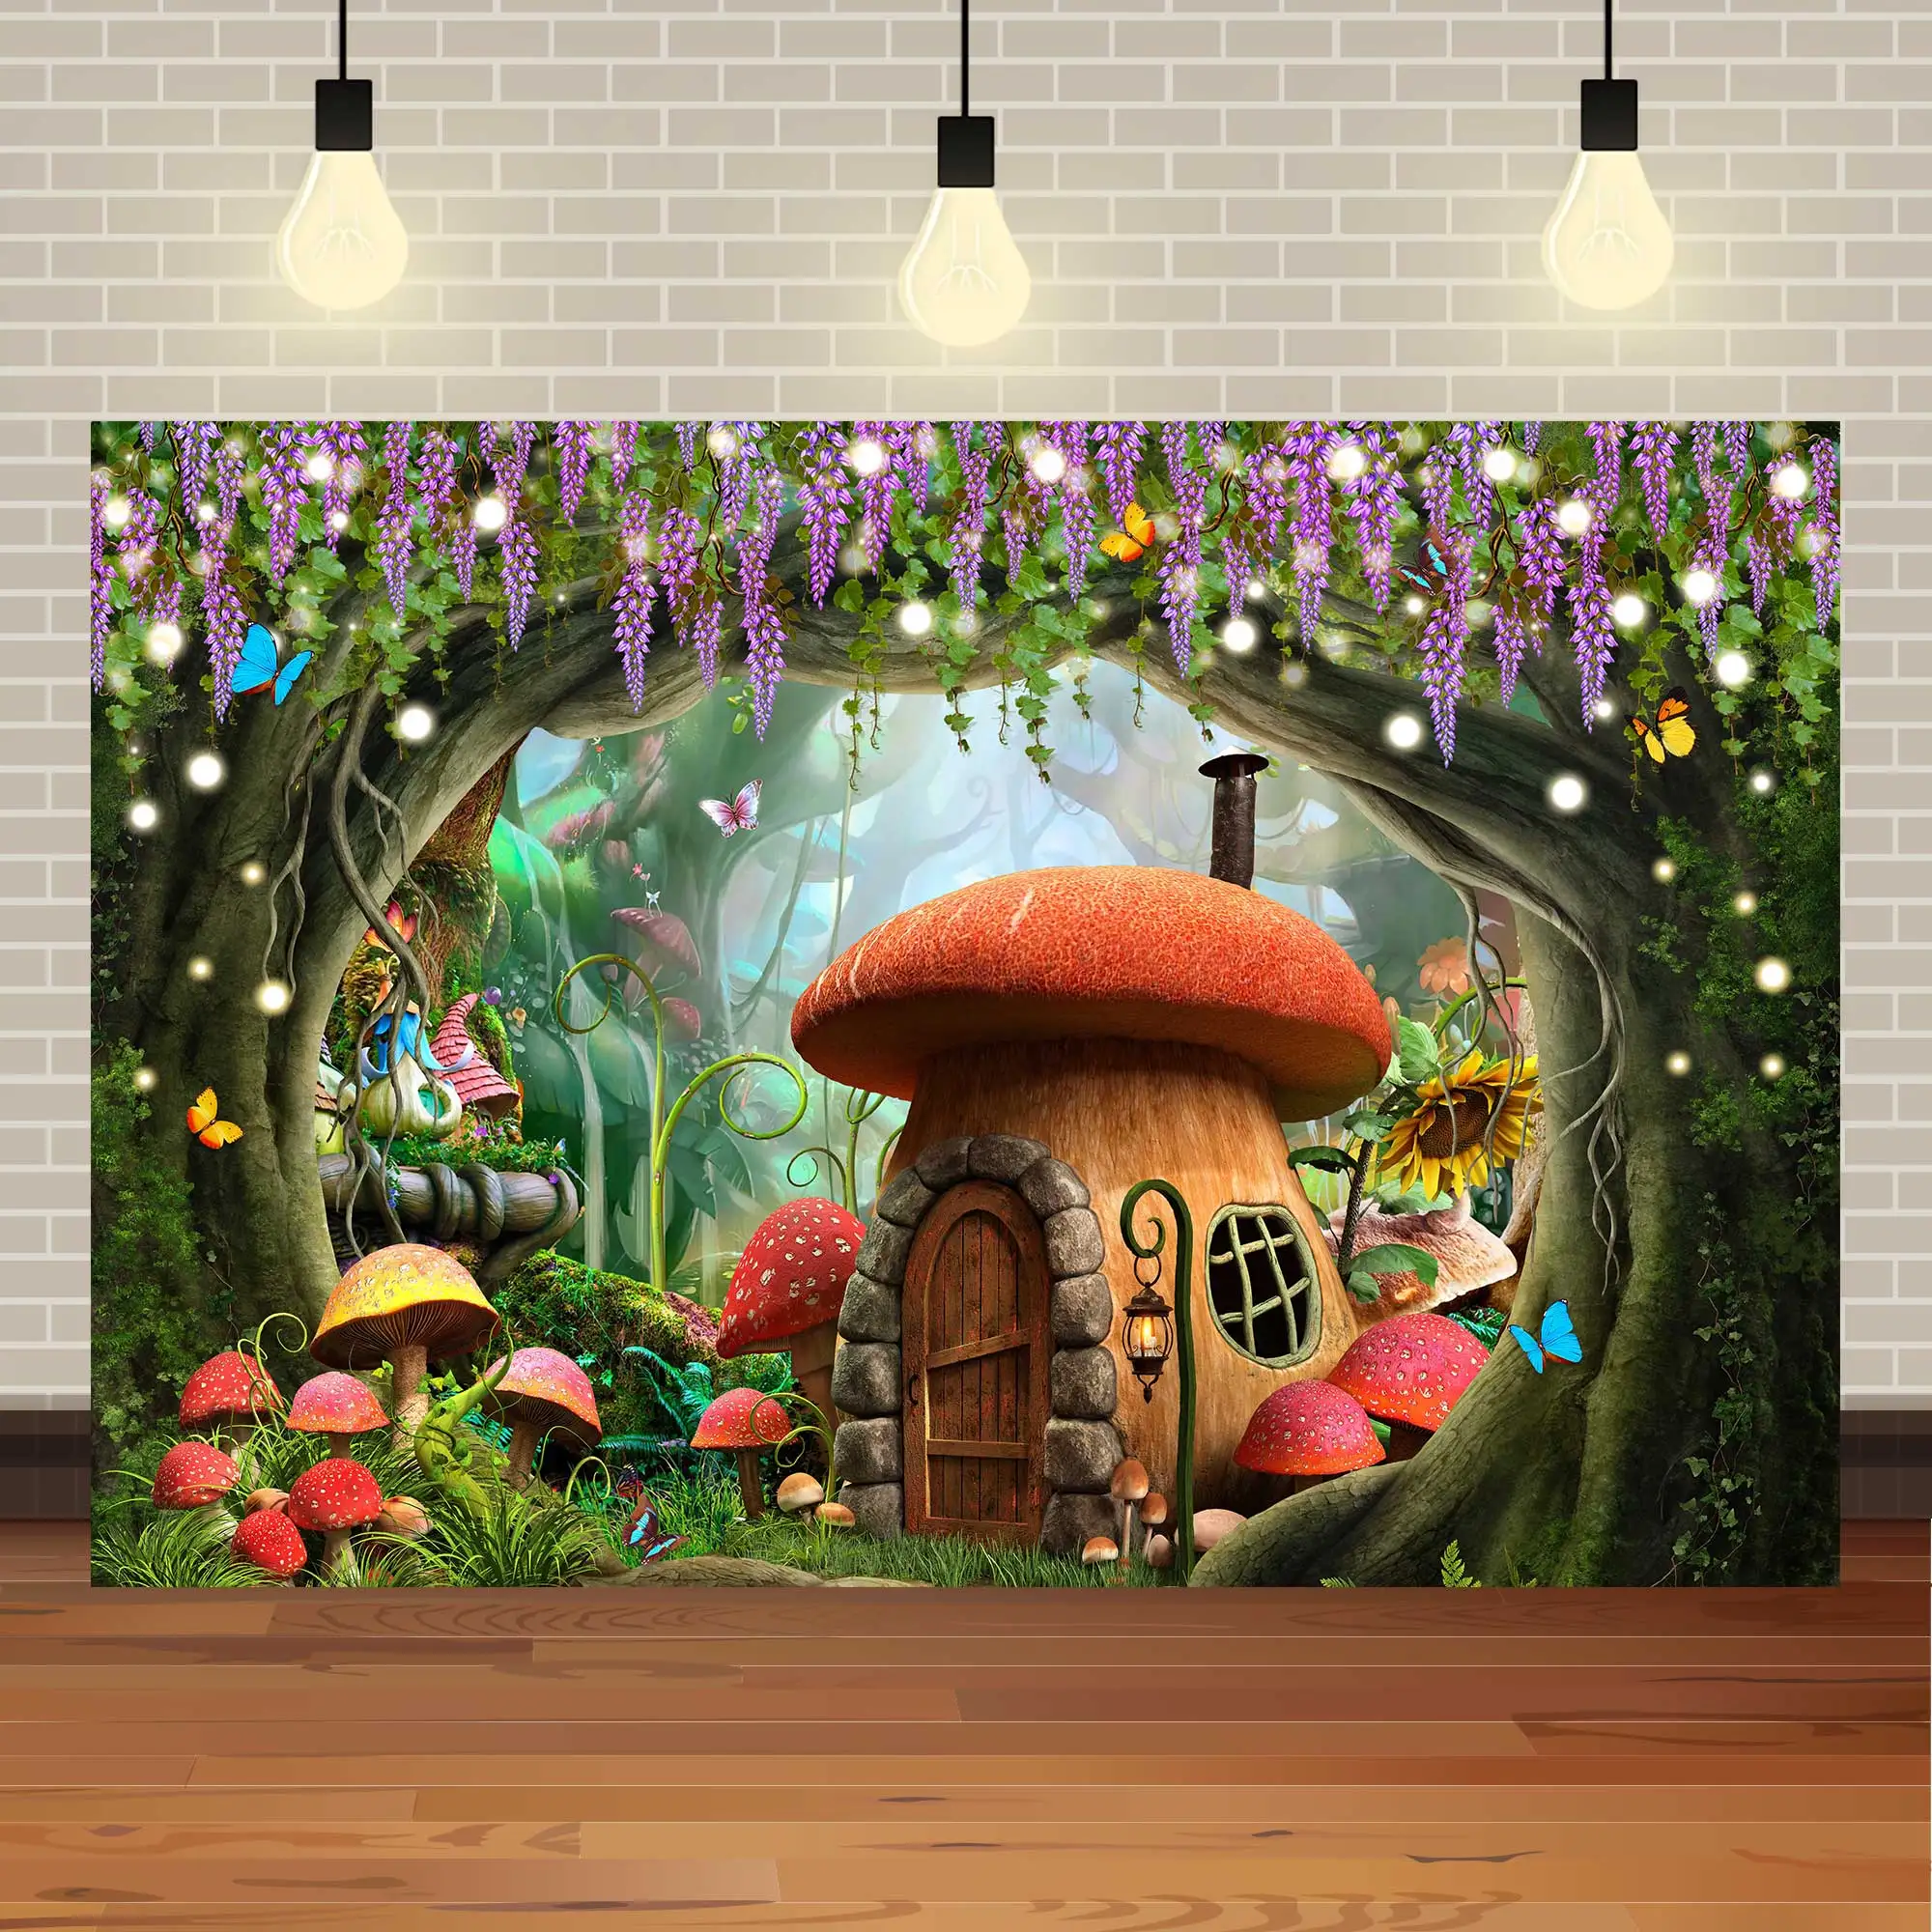 

Фон NeoBack мечтательный лес сказка замок и грибы Страна Чудес джунгли малыш День рождения Свадьба Фотография фон